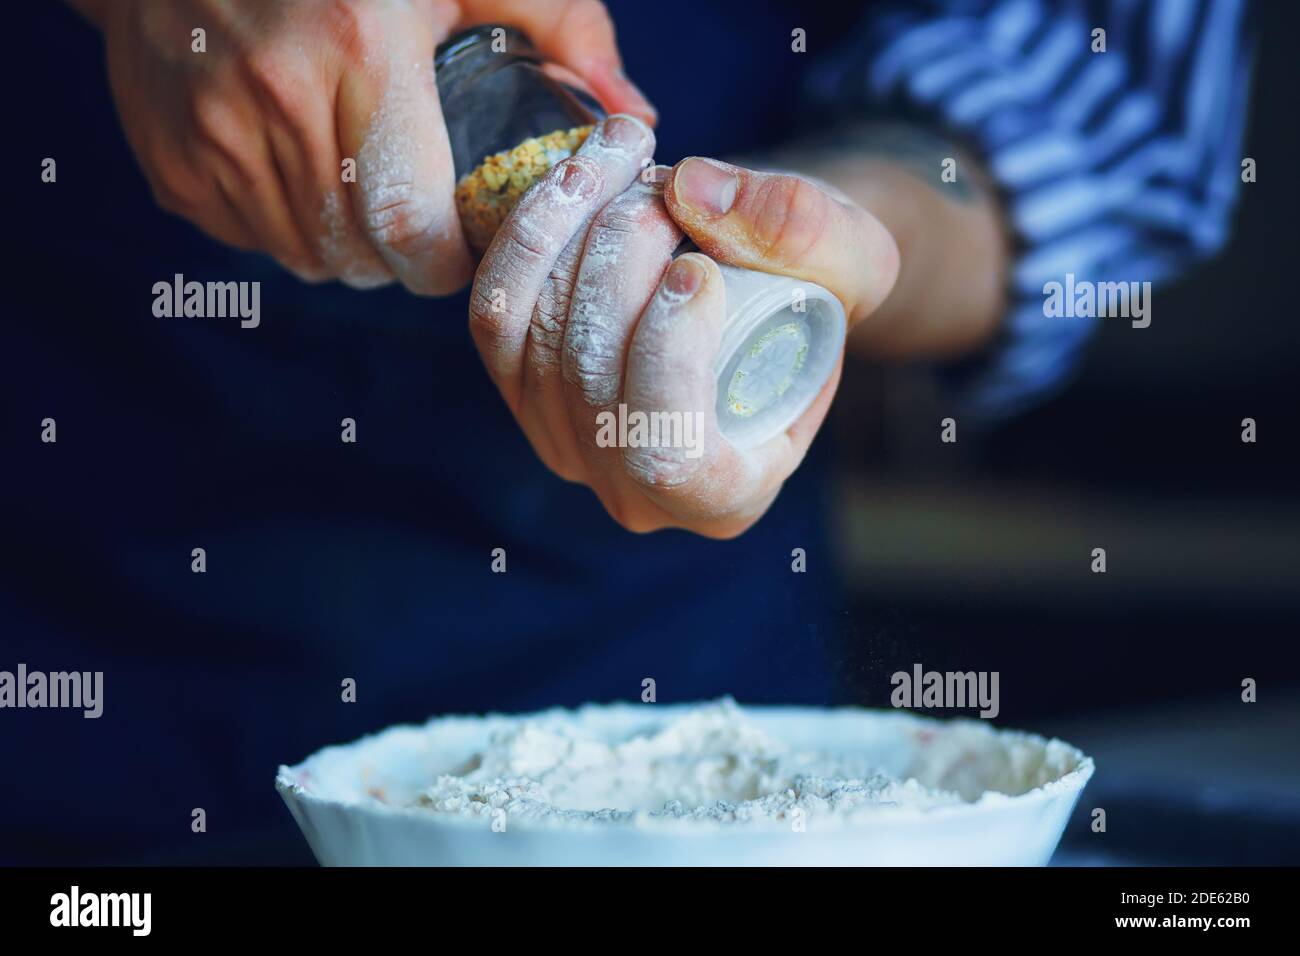 Un chef dans un tablier bleu et une chemise rayée tient un saupoudreur de sel de verre avec assaisonnement et le verse dans un bol de farine pour la cuisson future. Cuisine maison. Banque D'Images